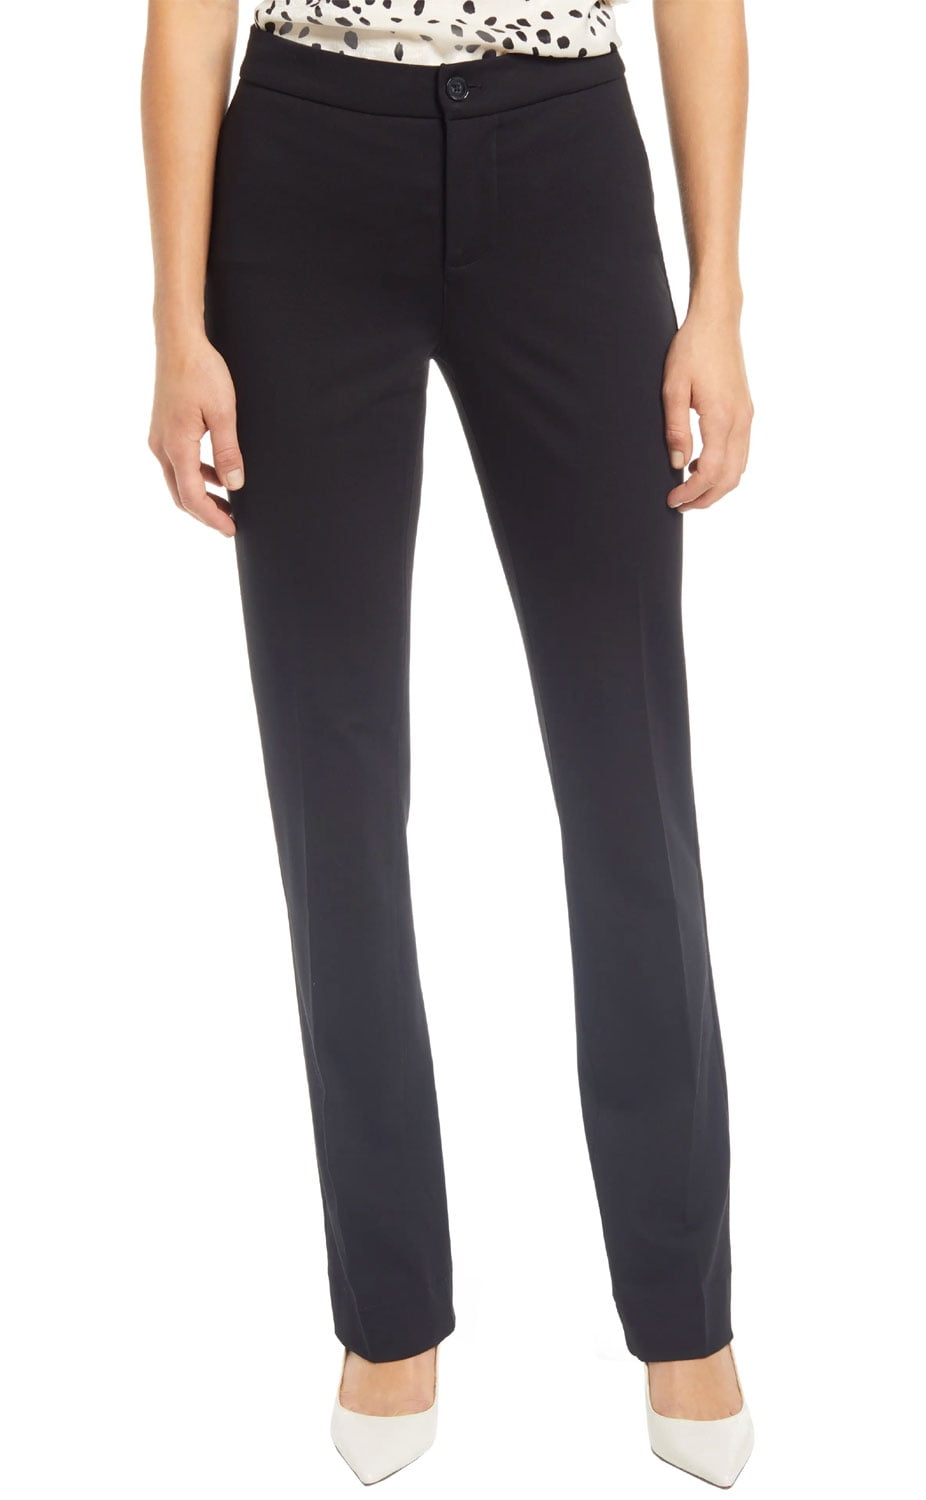 NYDJ Curves 360 Womens Slim Fit Ponte Pants 4 Black - NWT $119 - Walmart.com